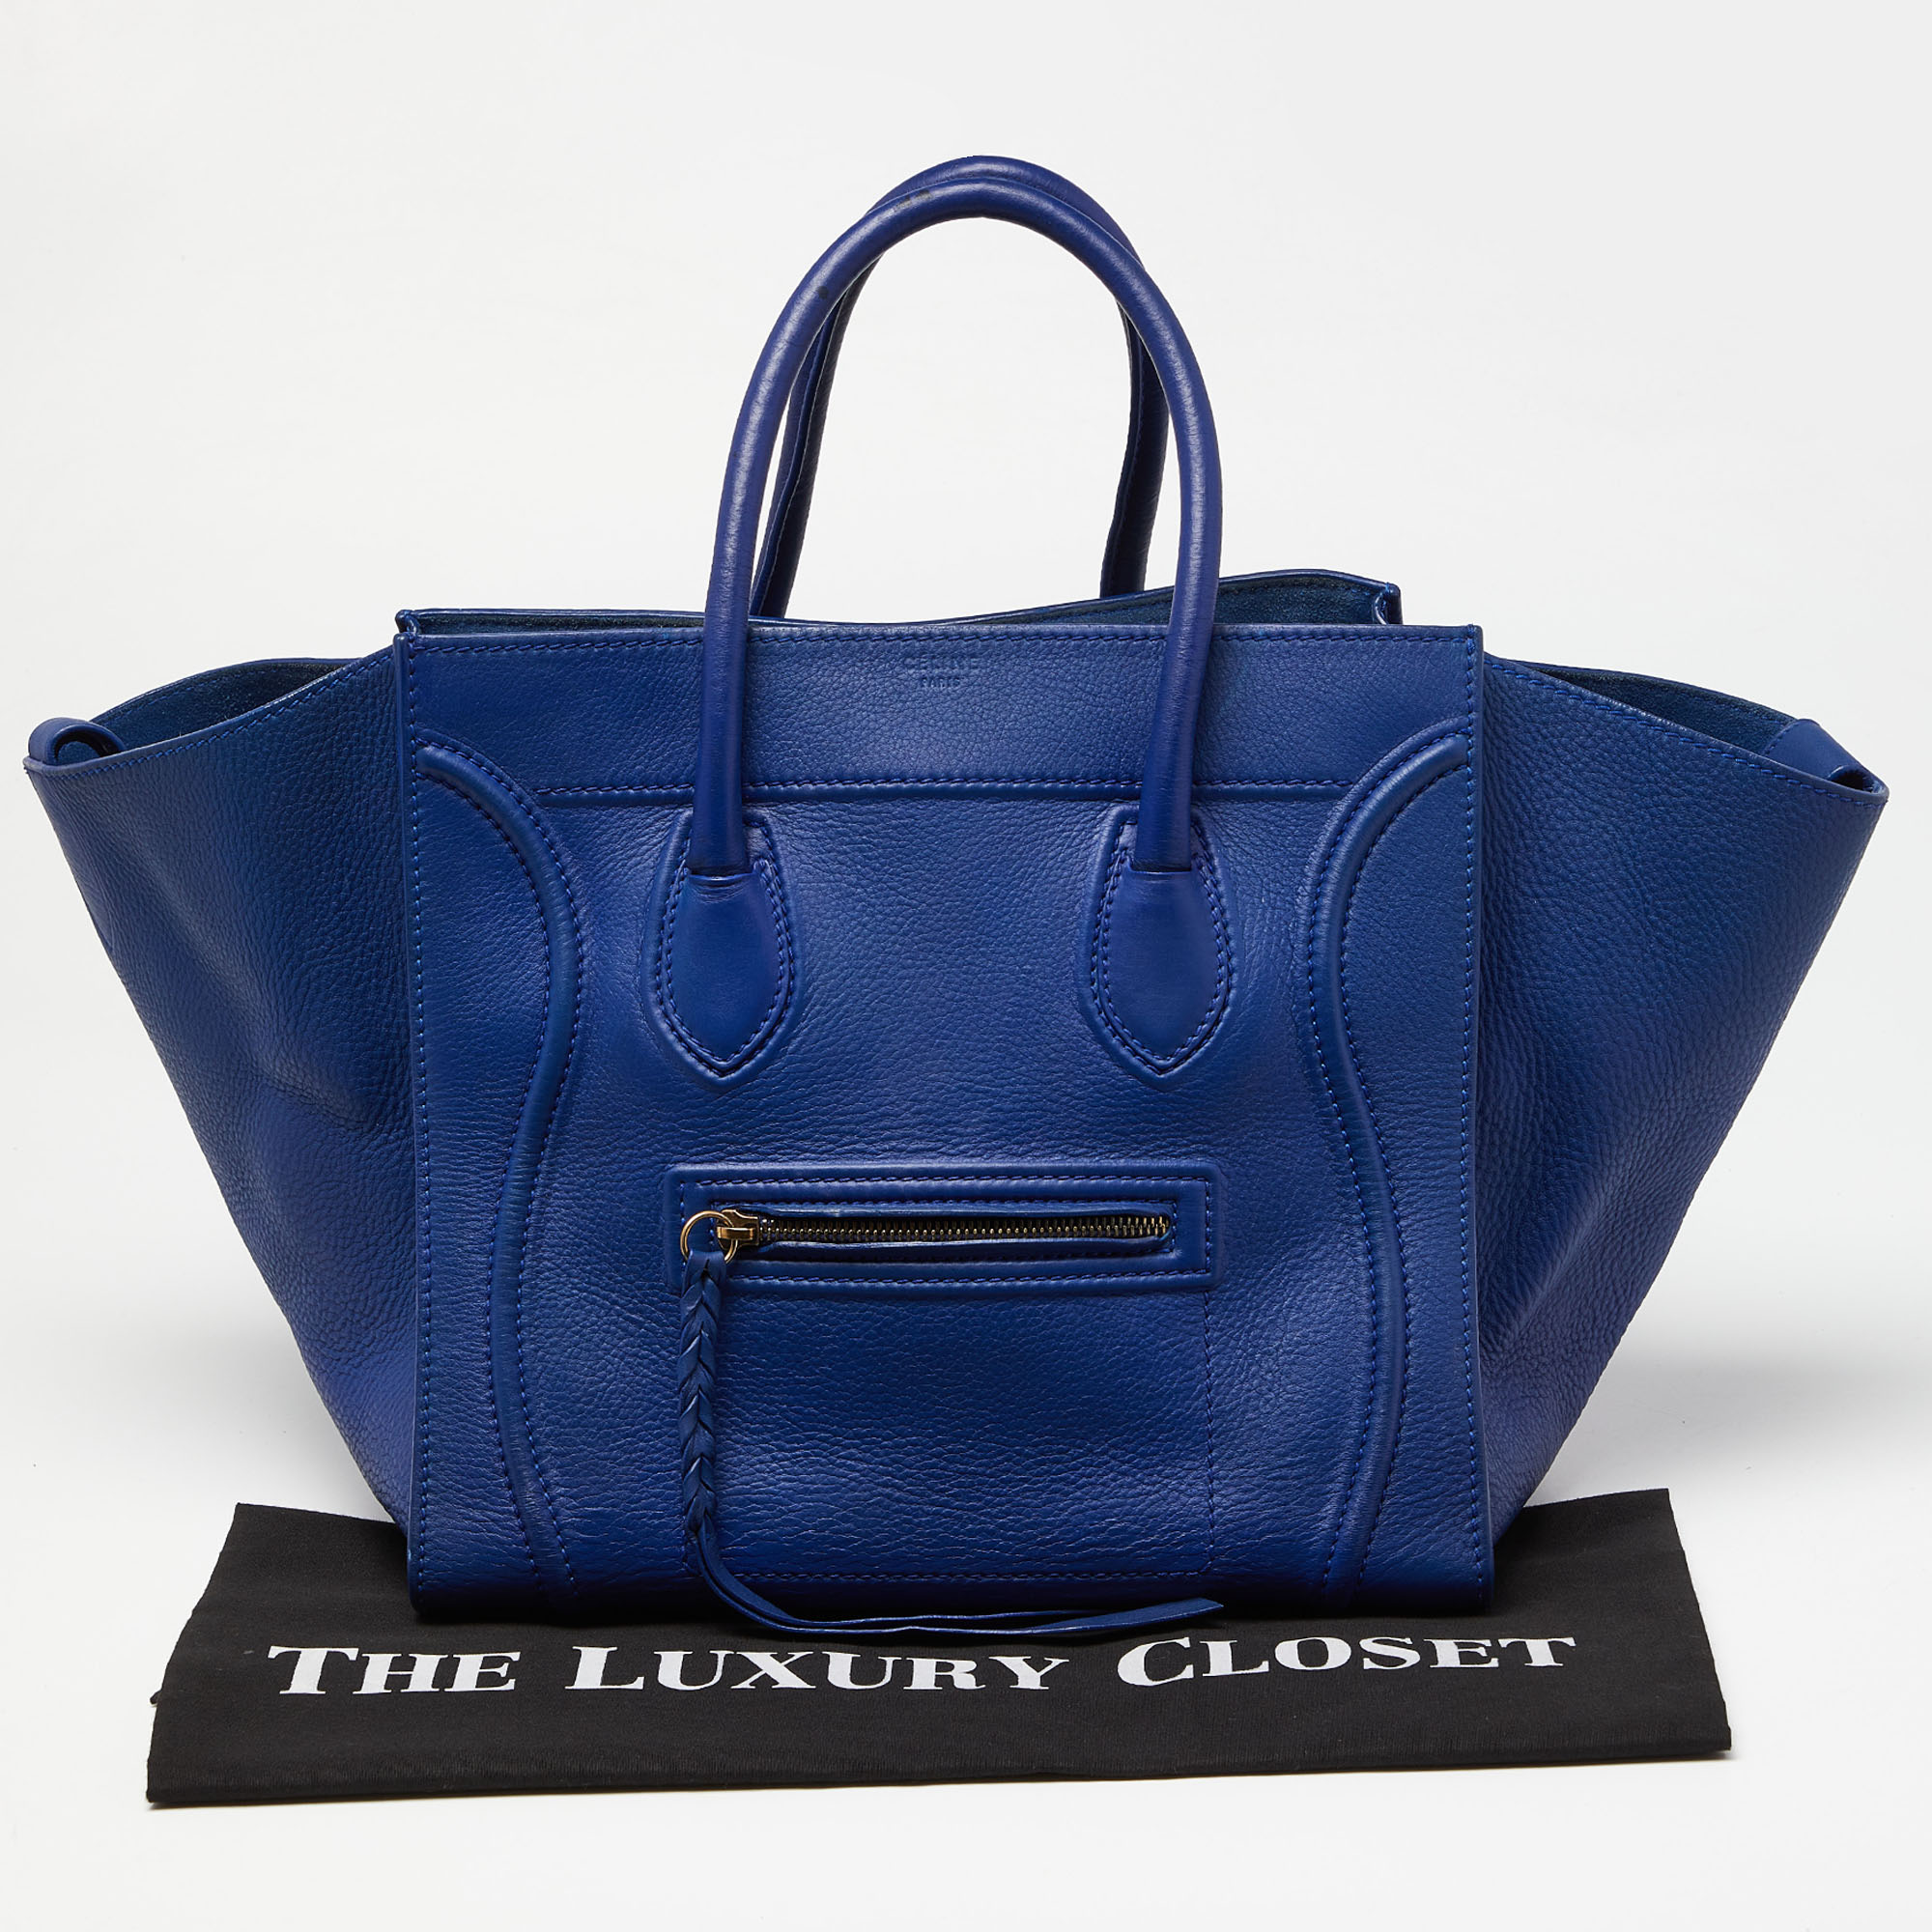 Celine Blue Leather Medium Phantom Luggage Tote